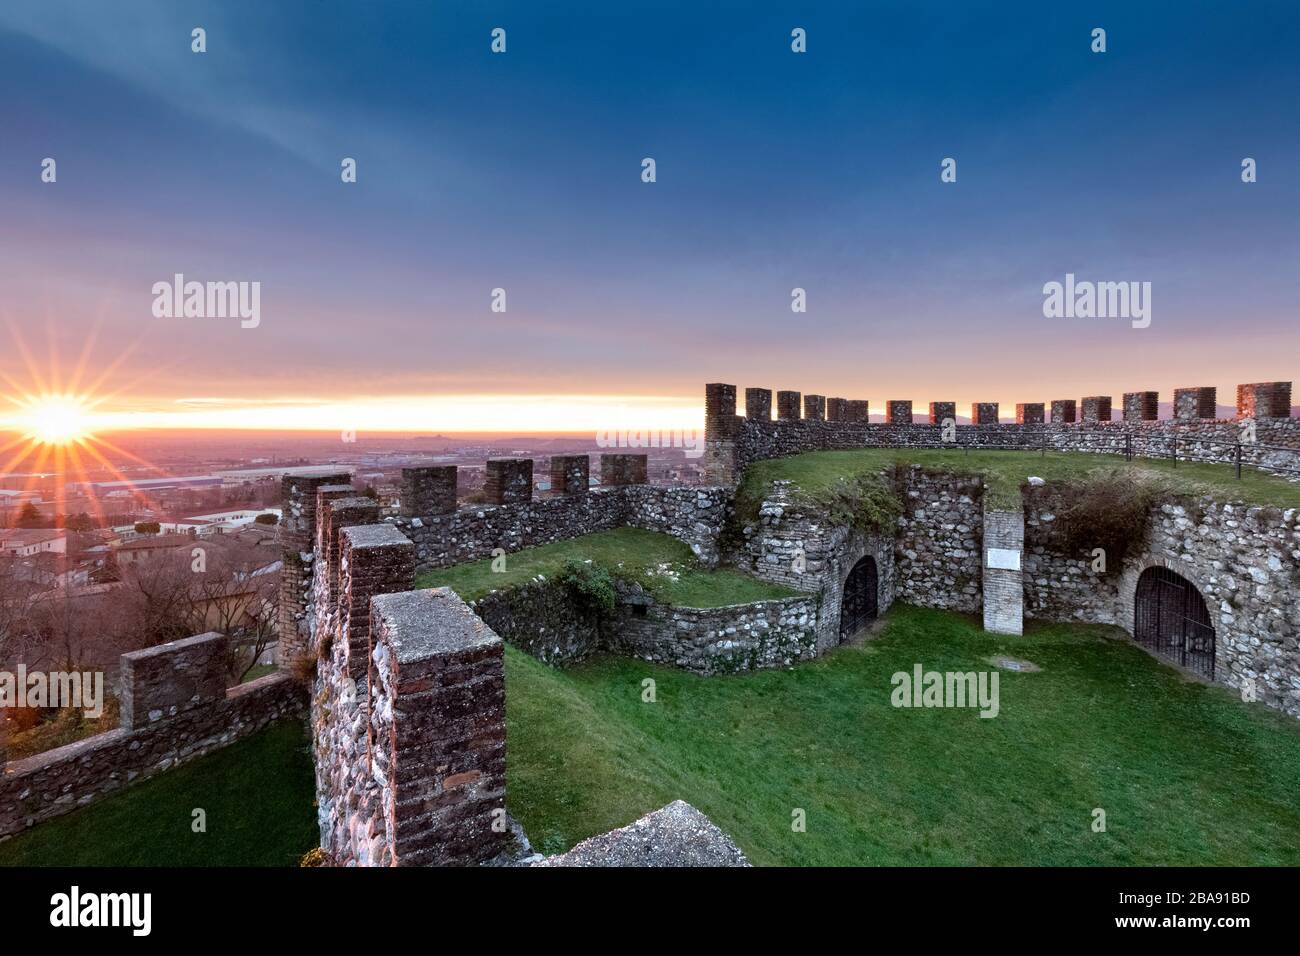 Tramonto sulle mura merlate della Rocca di Lonato. Lonato del Garda, provincia di Brescia, Lombardia, Italia, Europa. Foto Stock